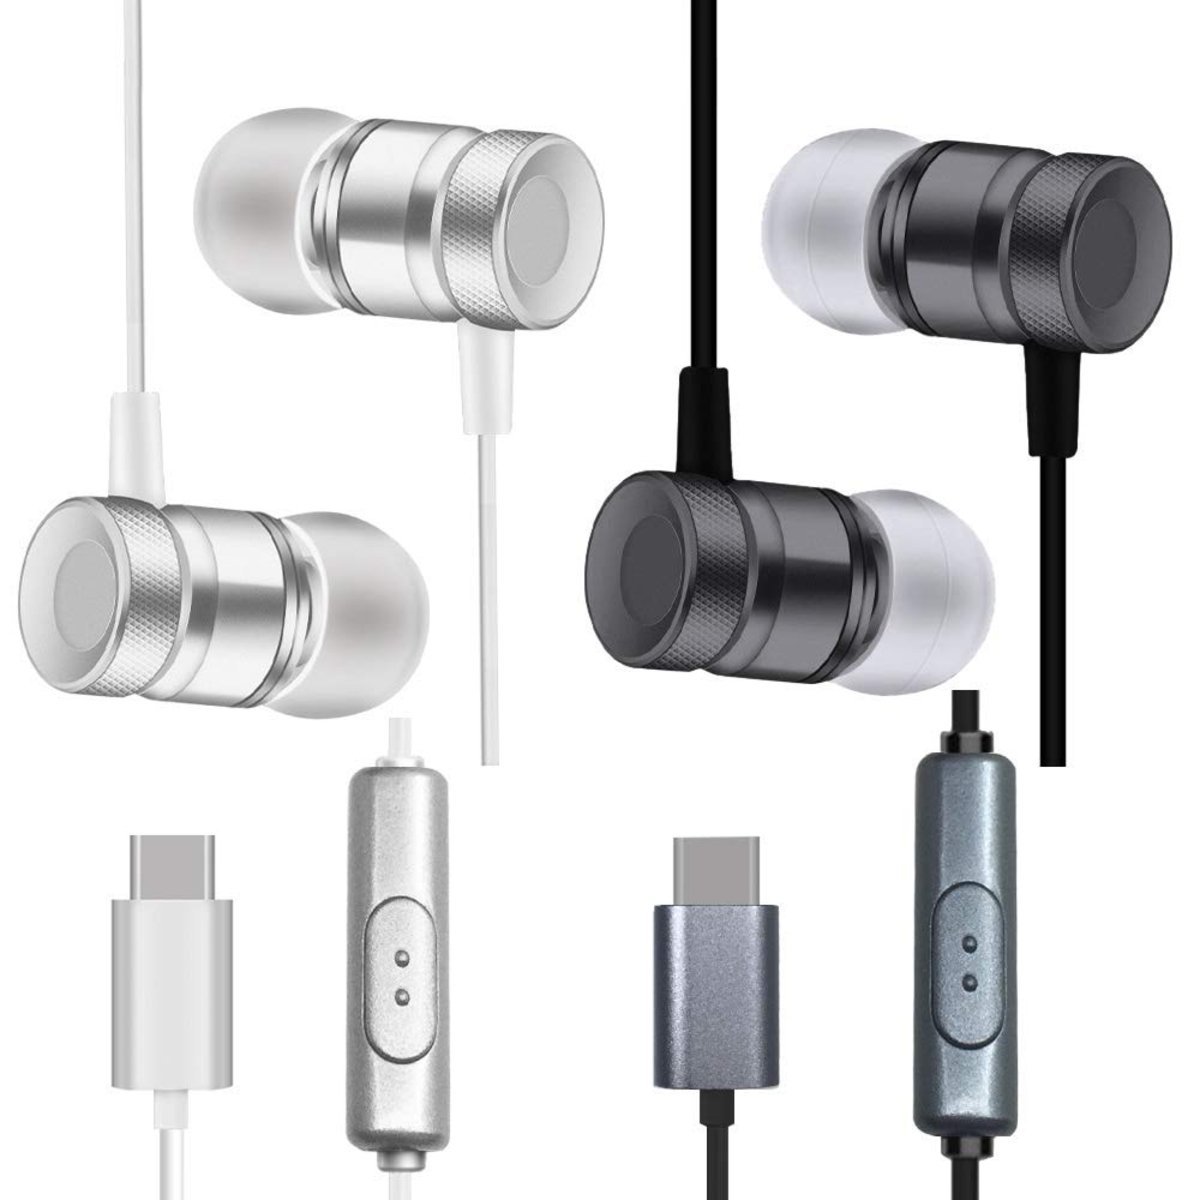 Estos son algunos de los mejores auriculares USB Tipo C que puedes comprar a buen precio